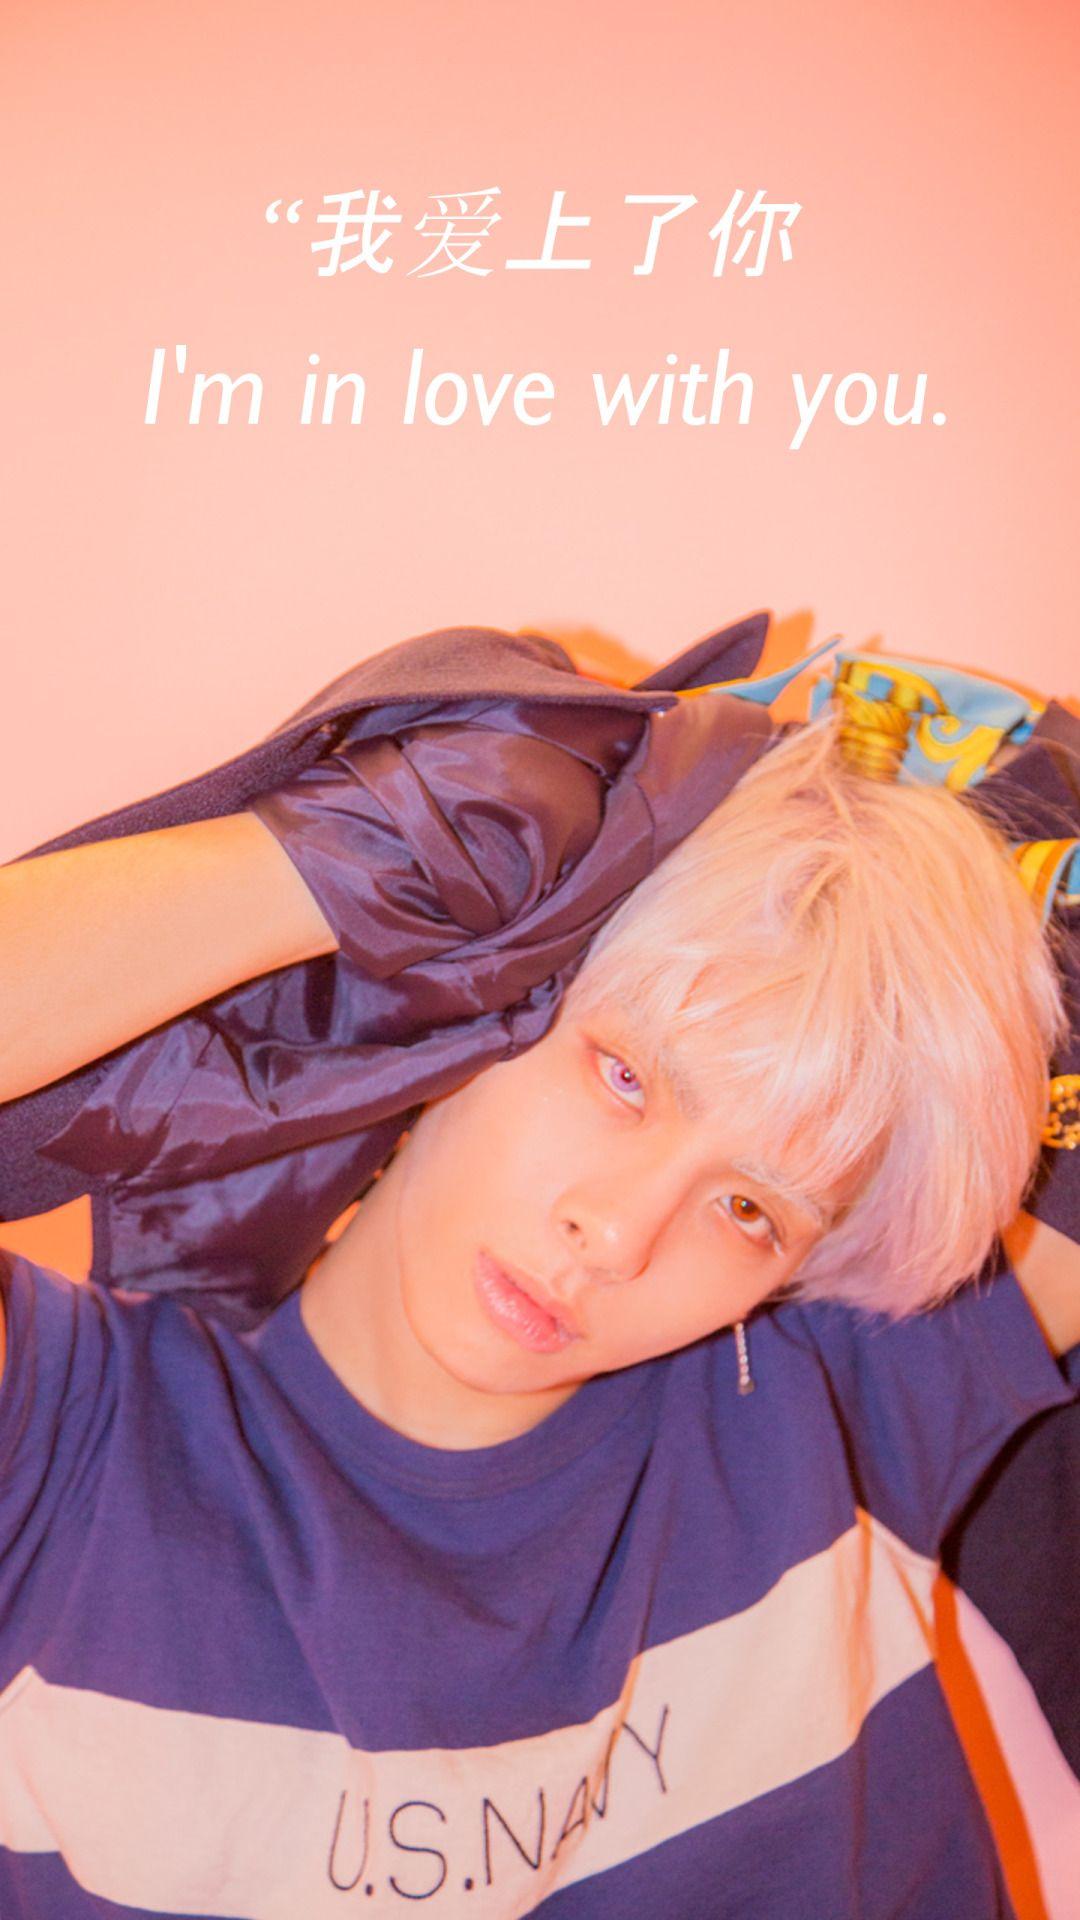 jonghyun locks hashtag Image on Tumblr